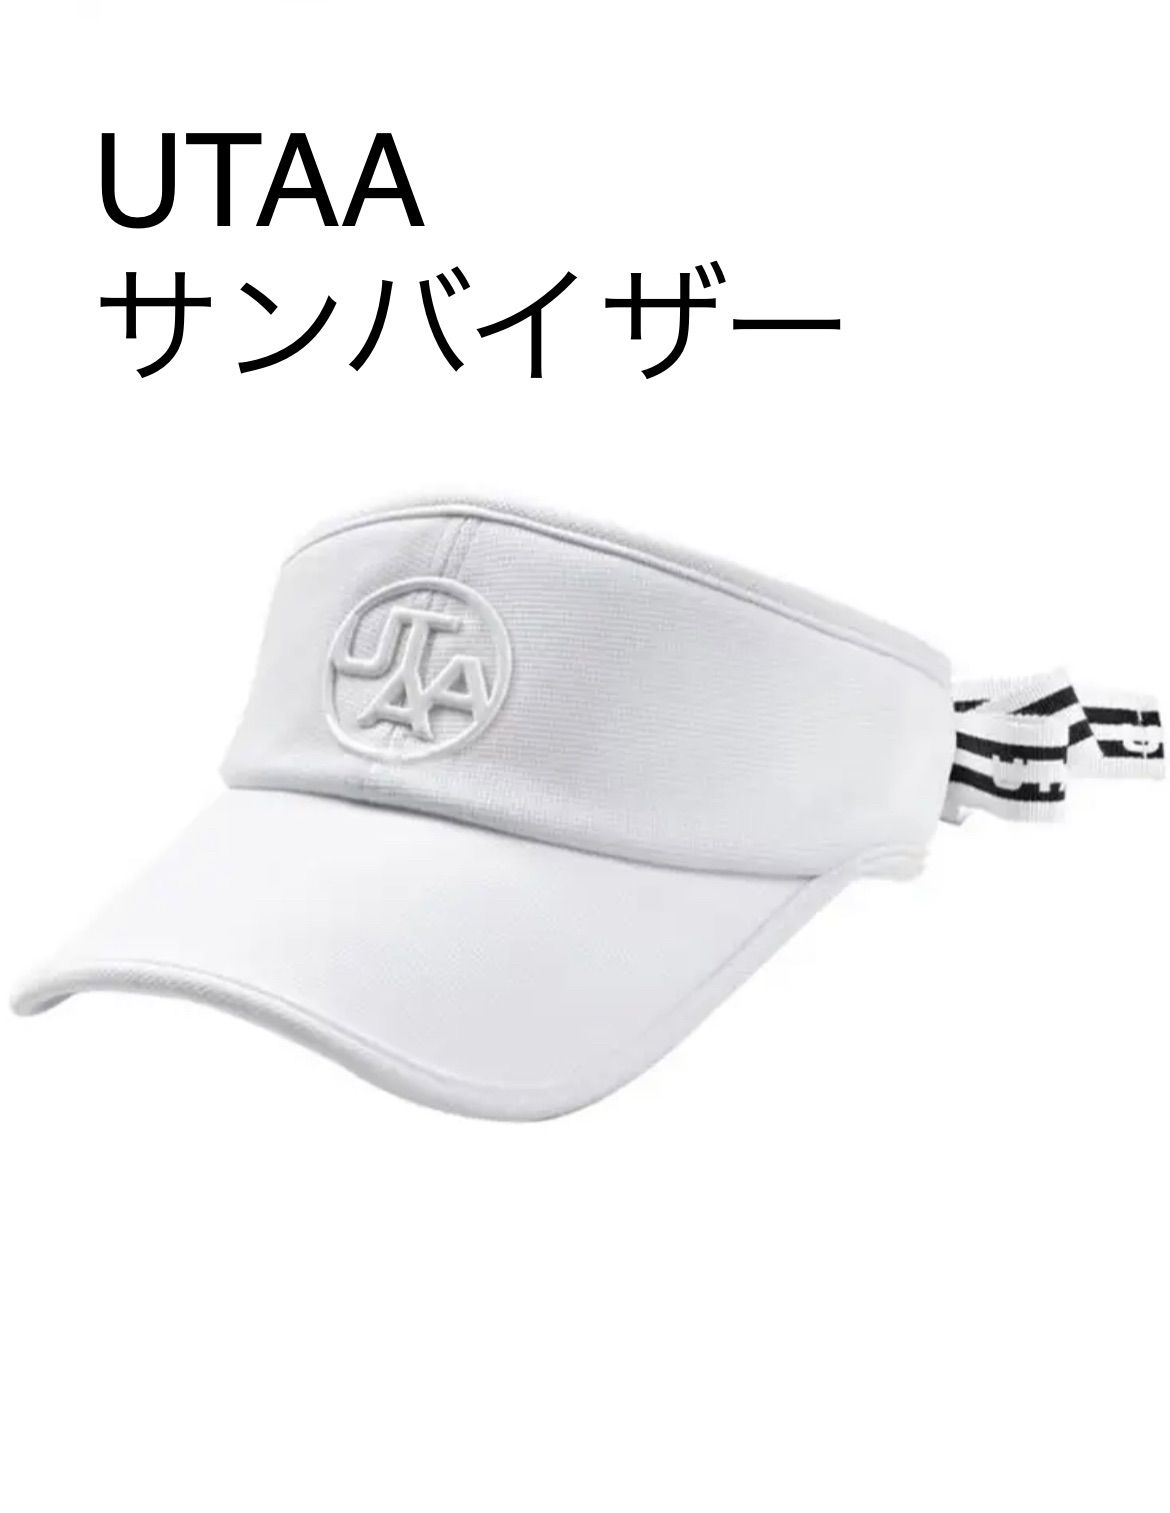 UTAA ウタ ゴルフ サンバイザー ホワイト 白 シンプル 韓国 おしゃれ